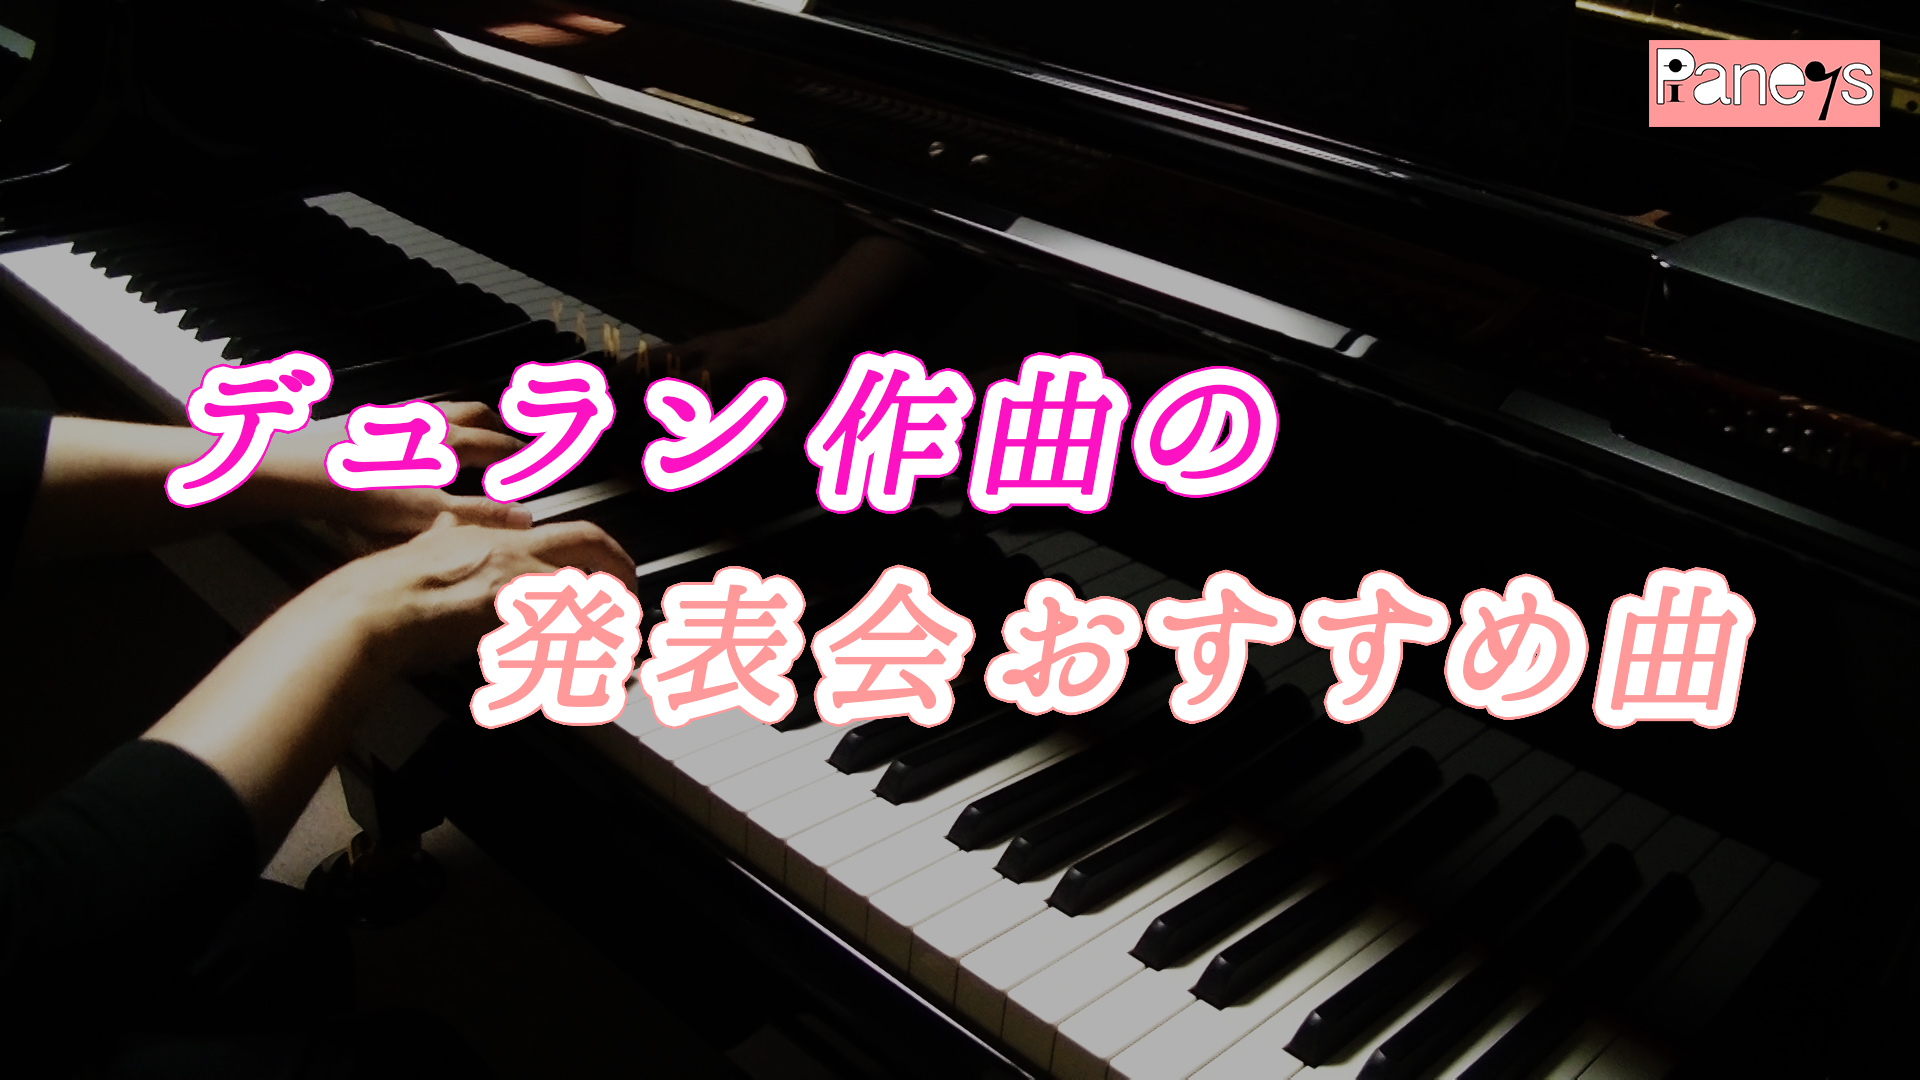 デュラン作曲の発表会おすすめ曲 動画で選べる ピアノ発表会おすすめ曲